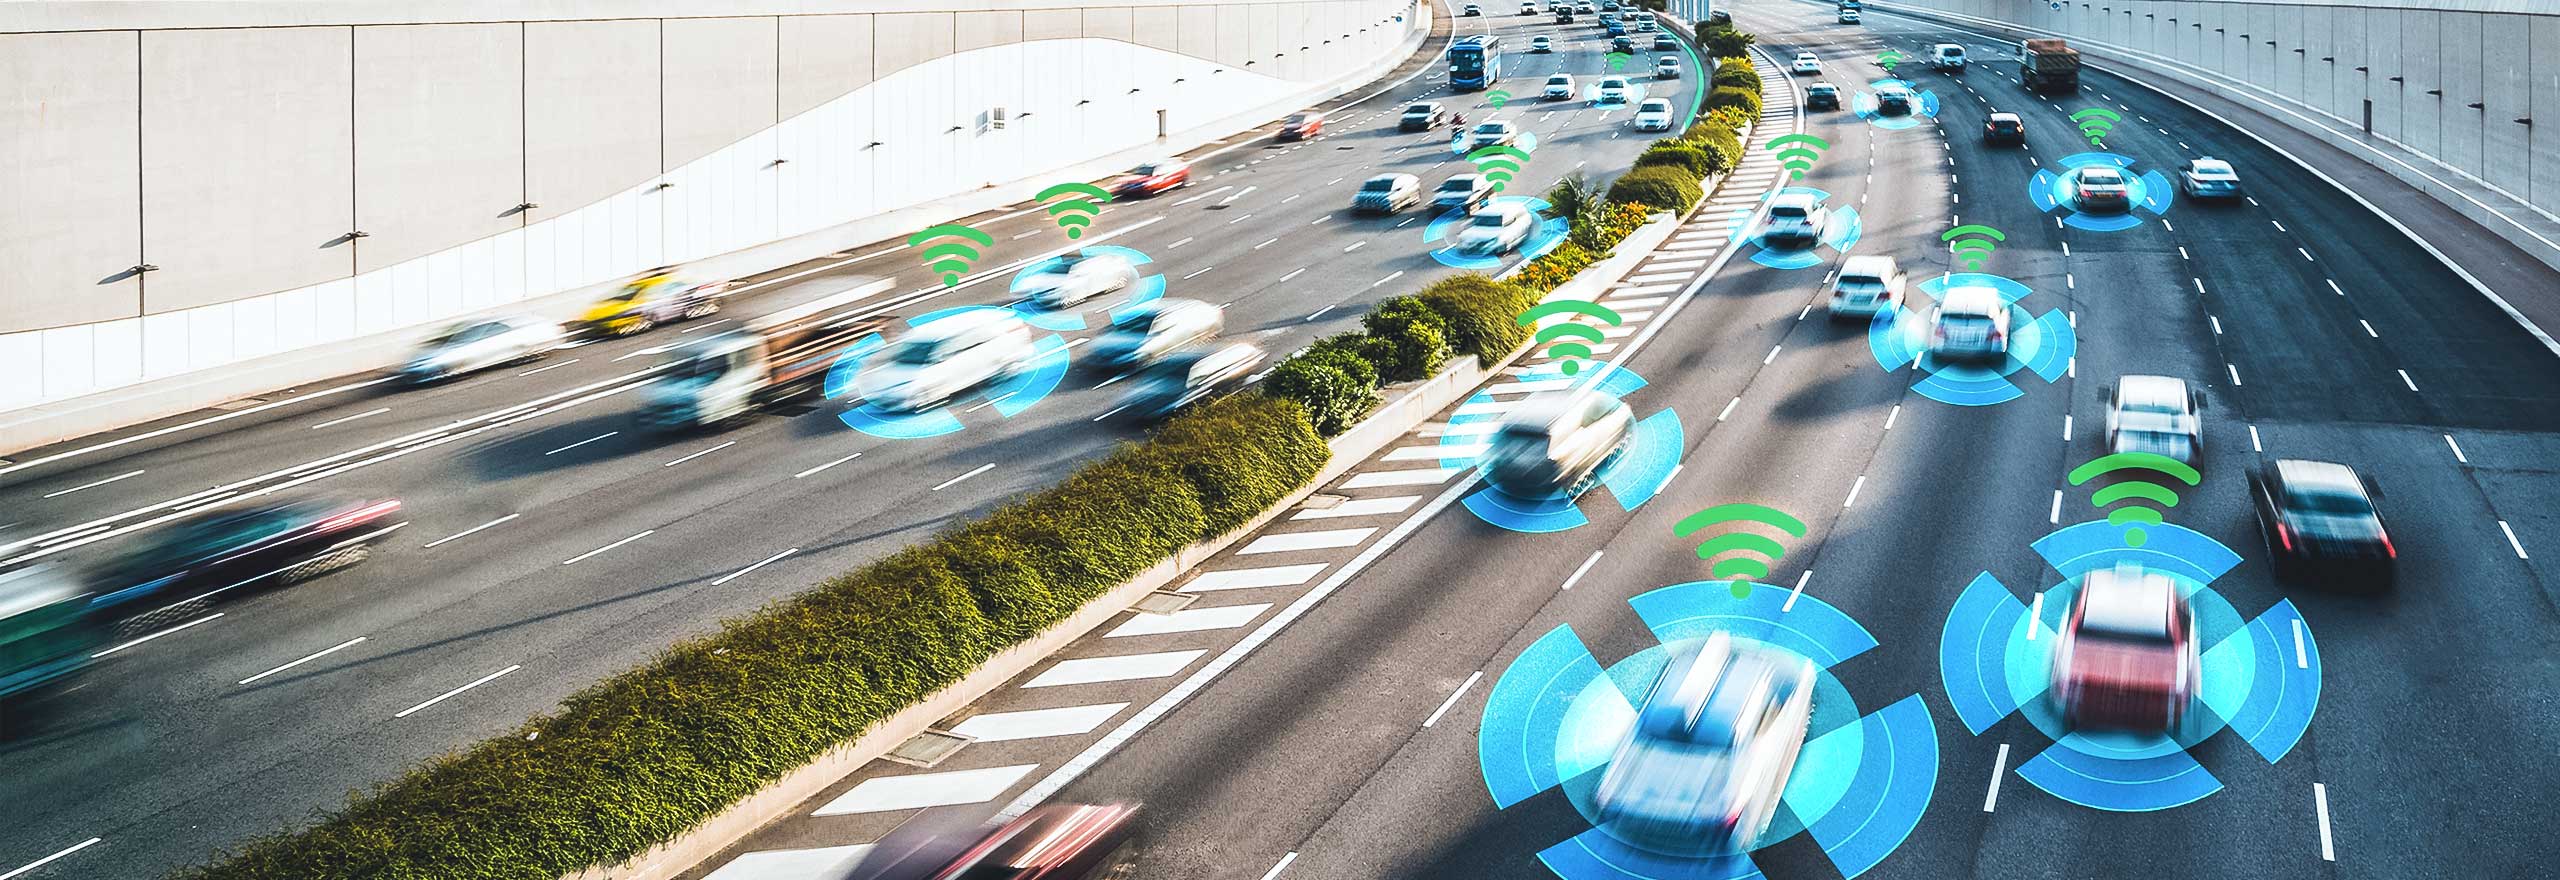 Carros em uma rodovia sendo analisados pelas soluções de percepção de veículos autônomos da Hexagon